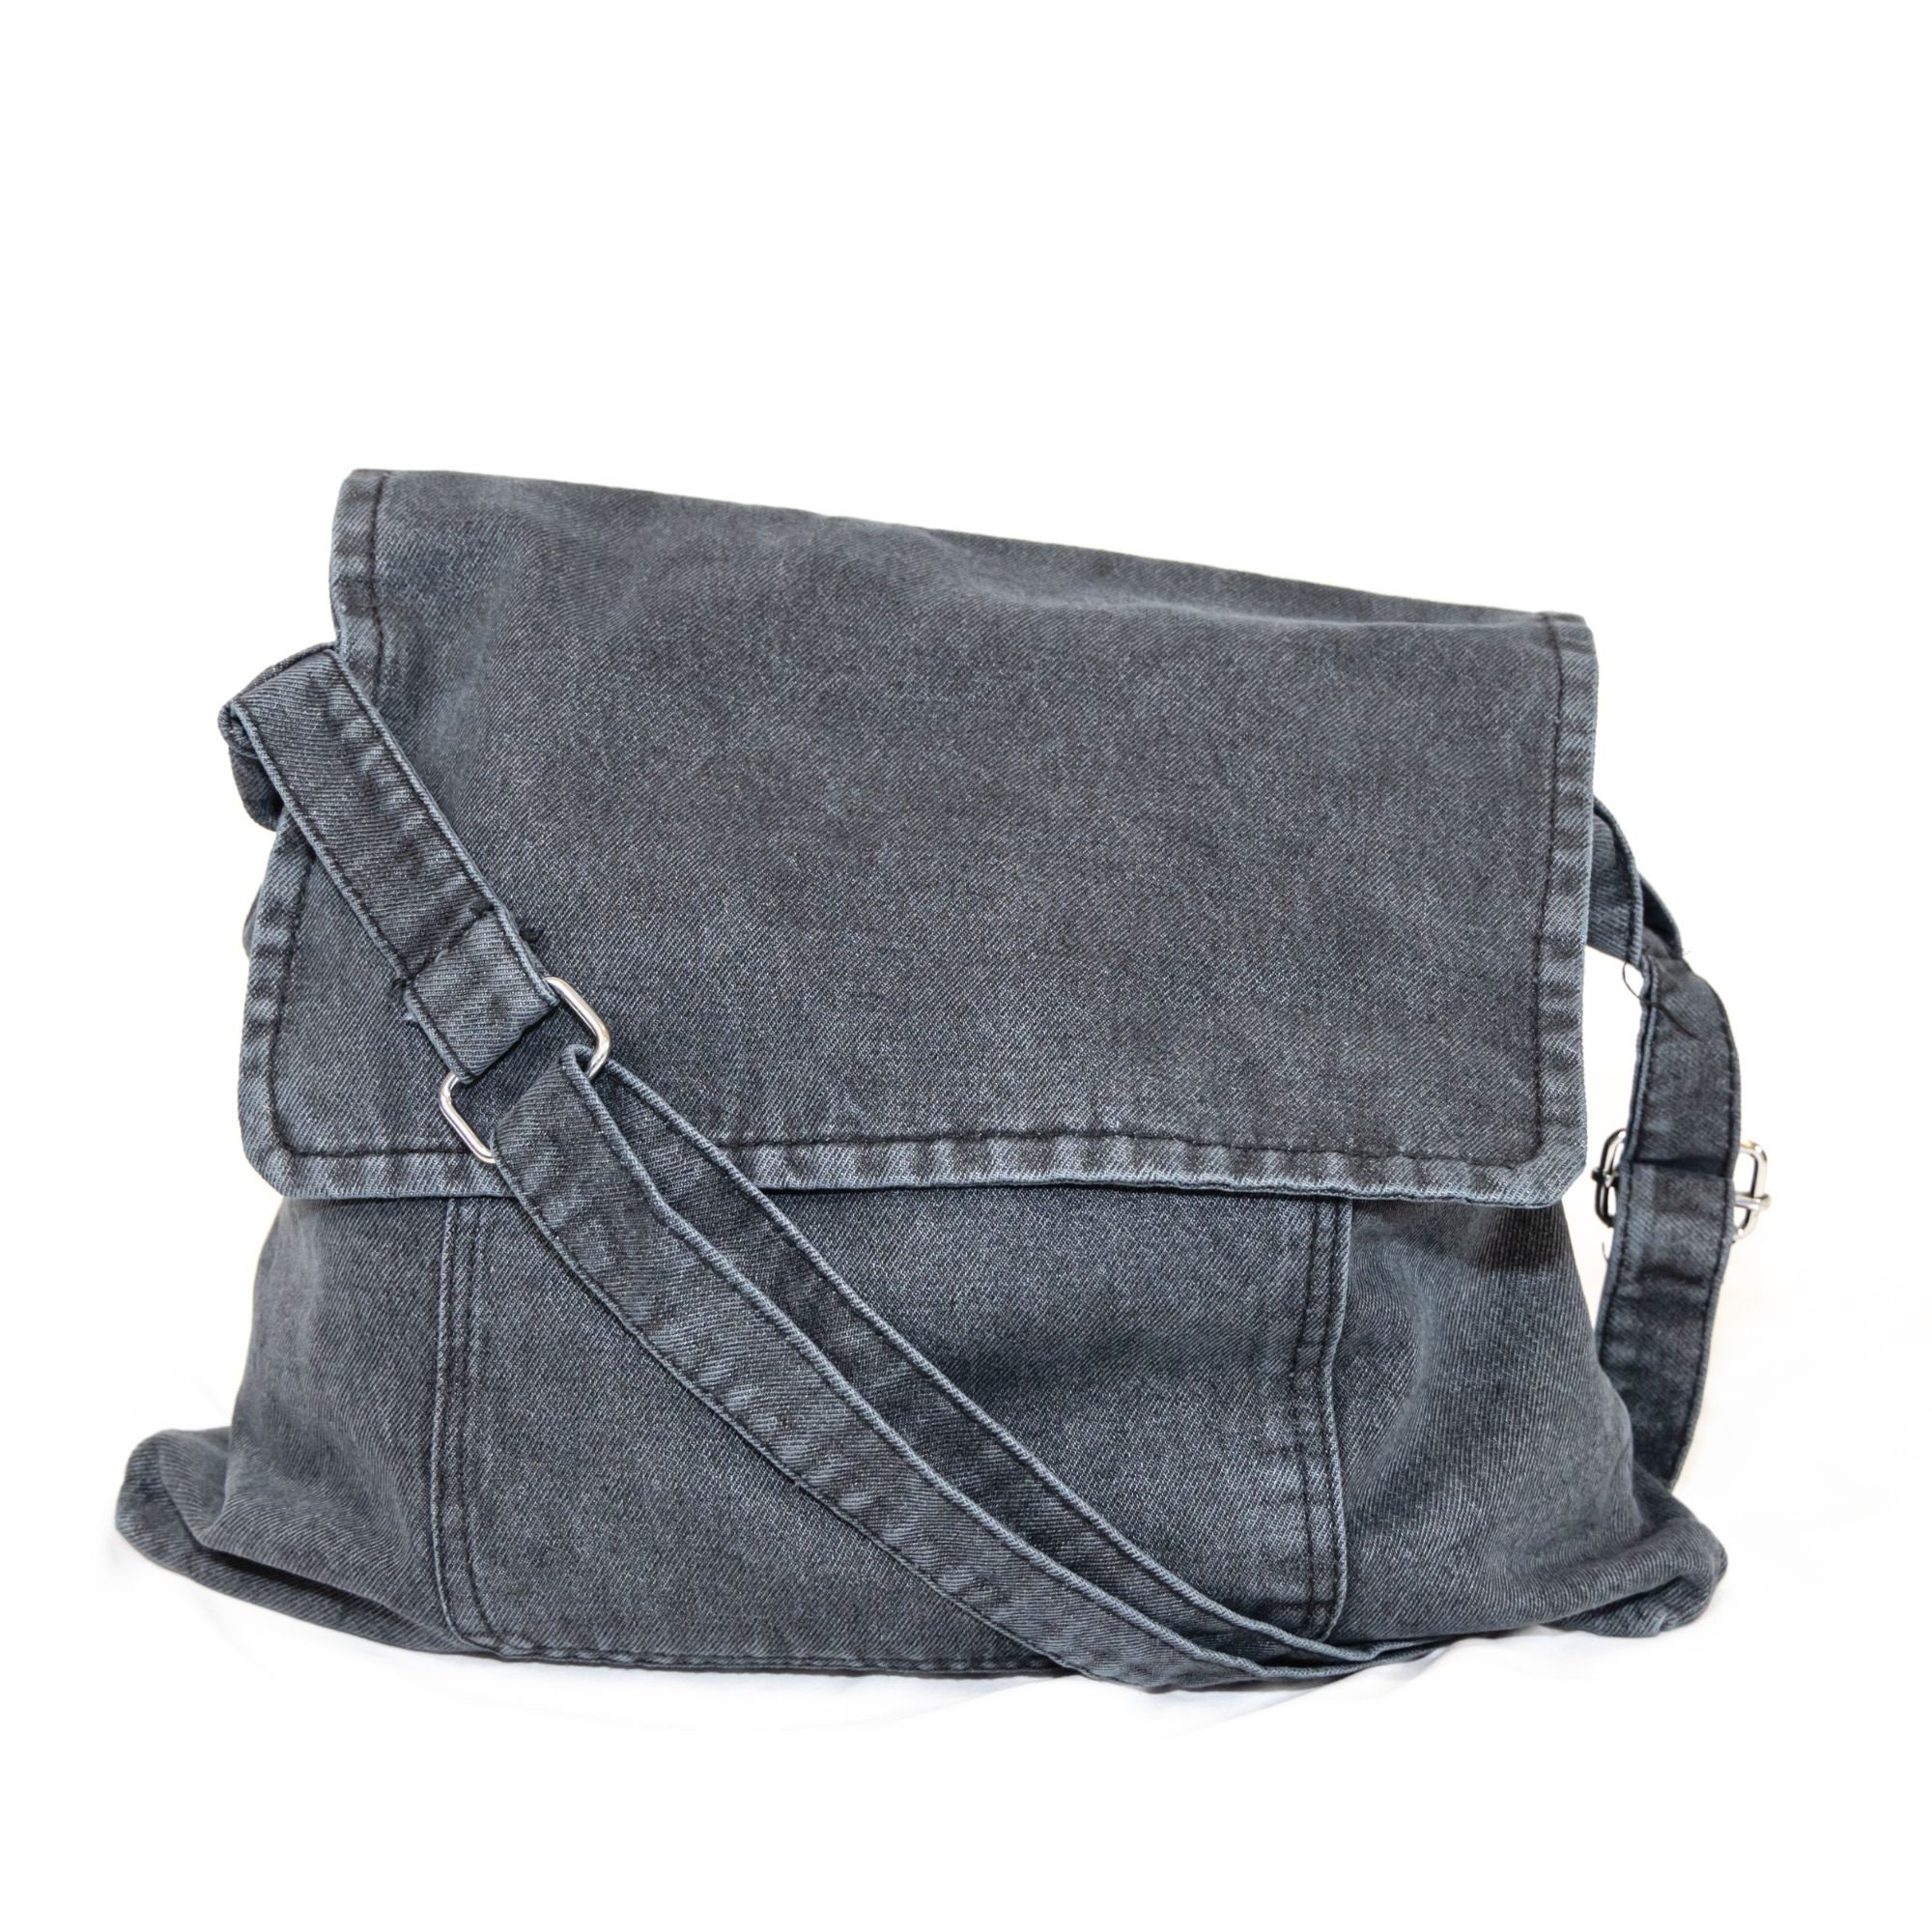 Denim bag - refashioned jeans bag shoulder bag  - Artmosfair